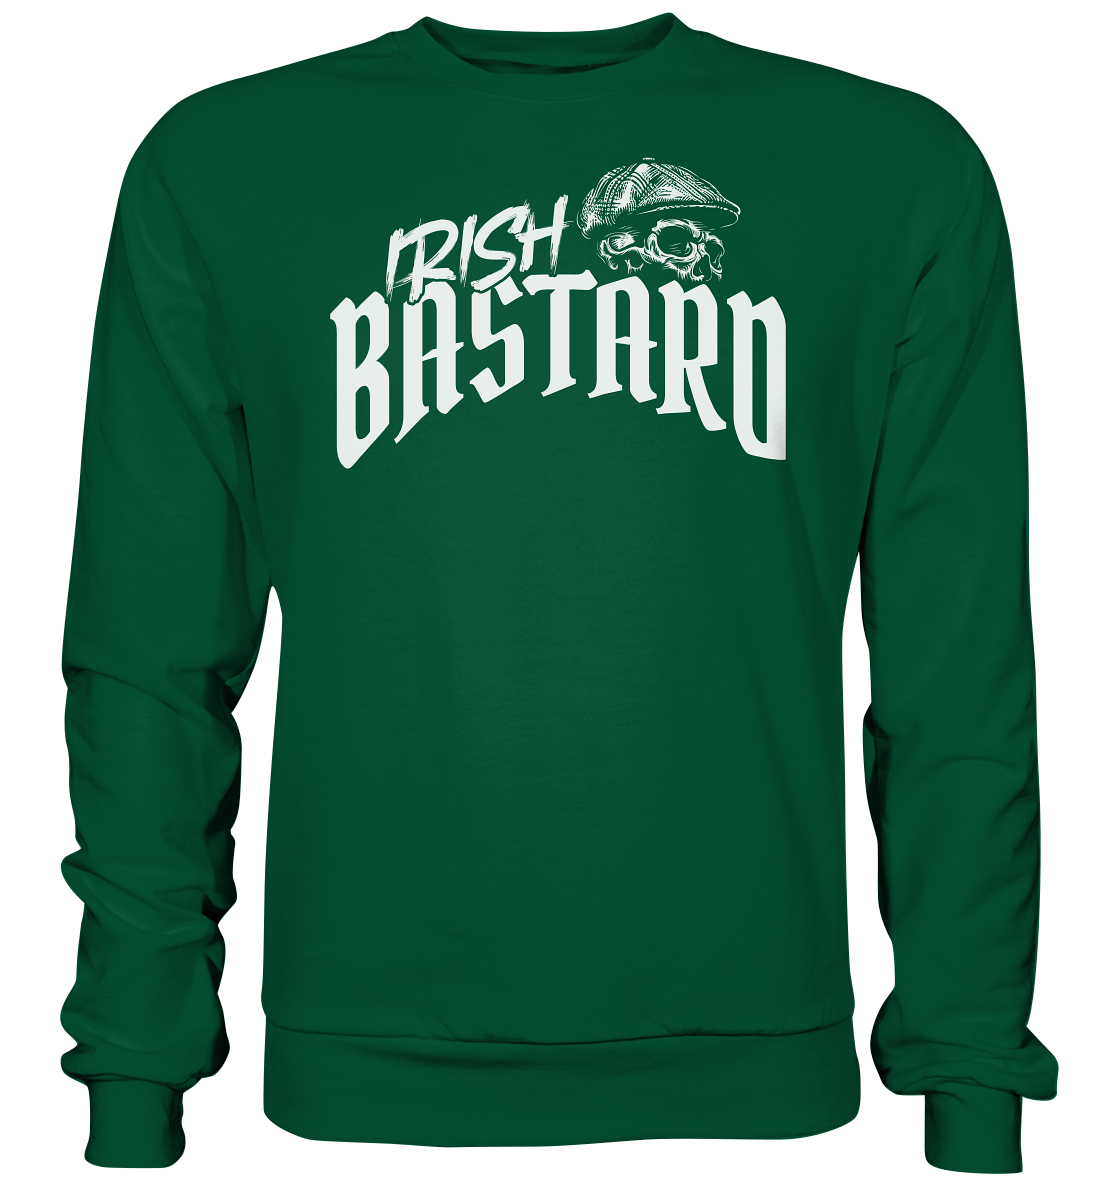 Irish Bastard "Flatcap-Skull V" - Basic Sweatshirt